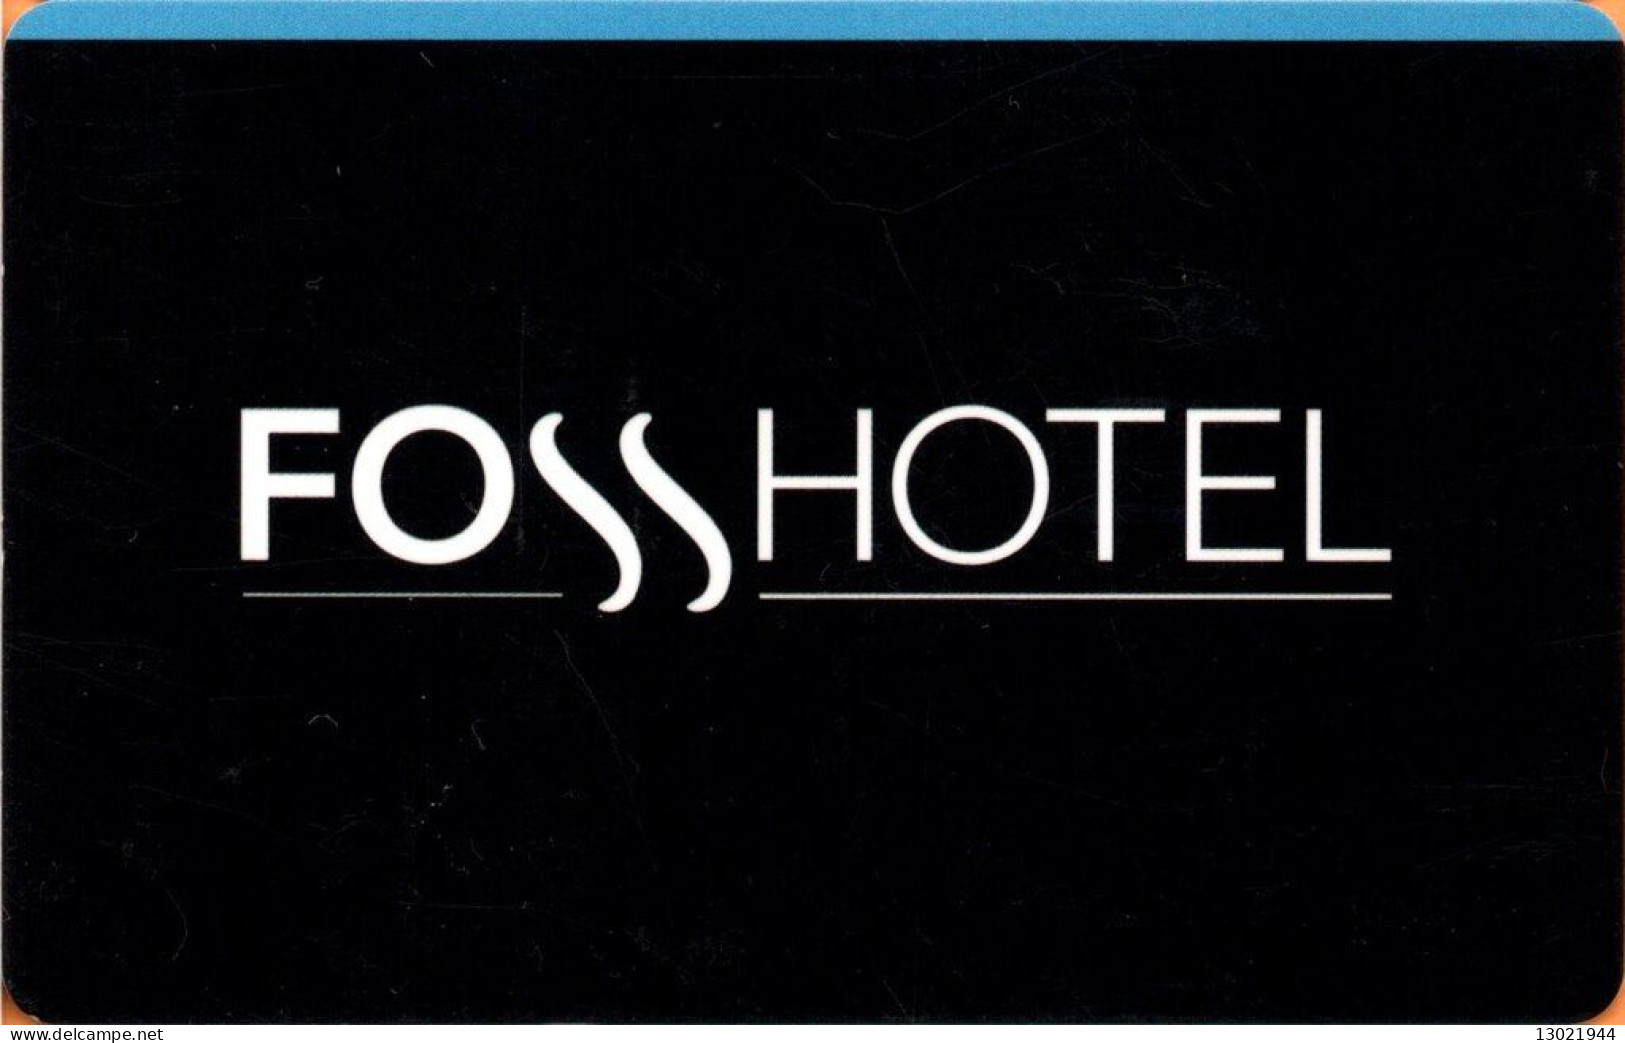 ISLANDA  KEY HOTEL  Fosshotel - Hotel Keycards